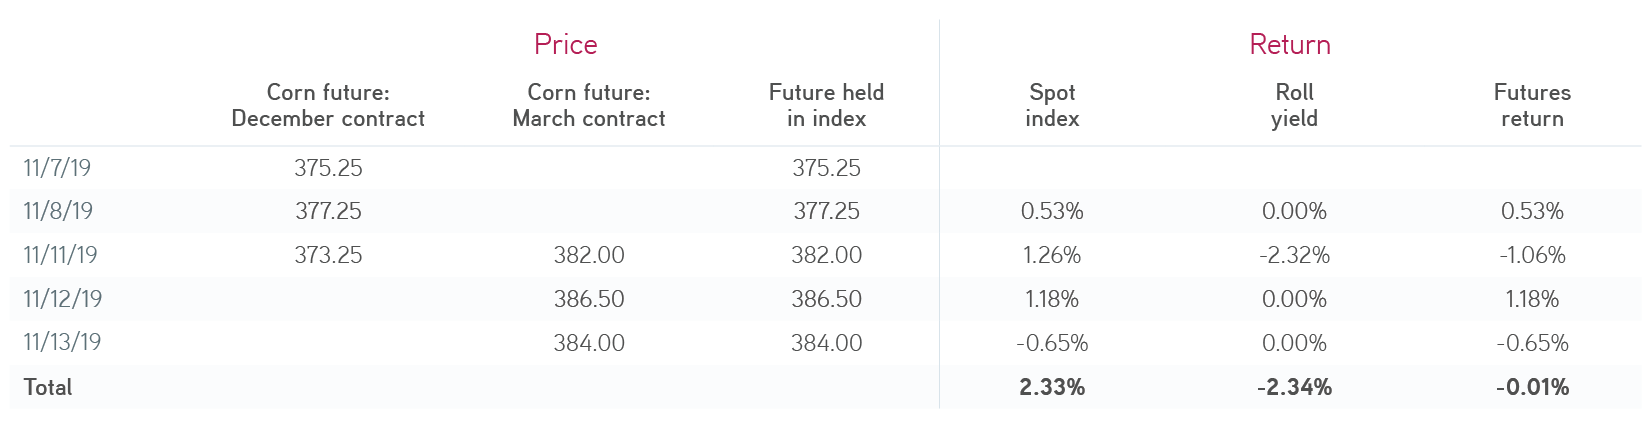 Spot index return versus futures return table